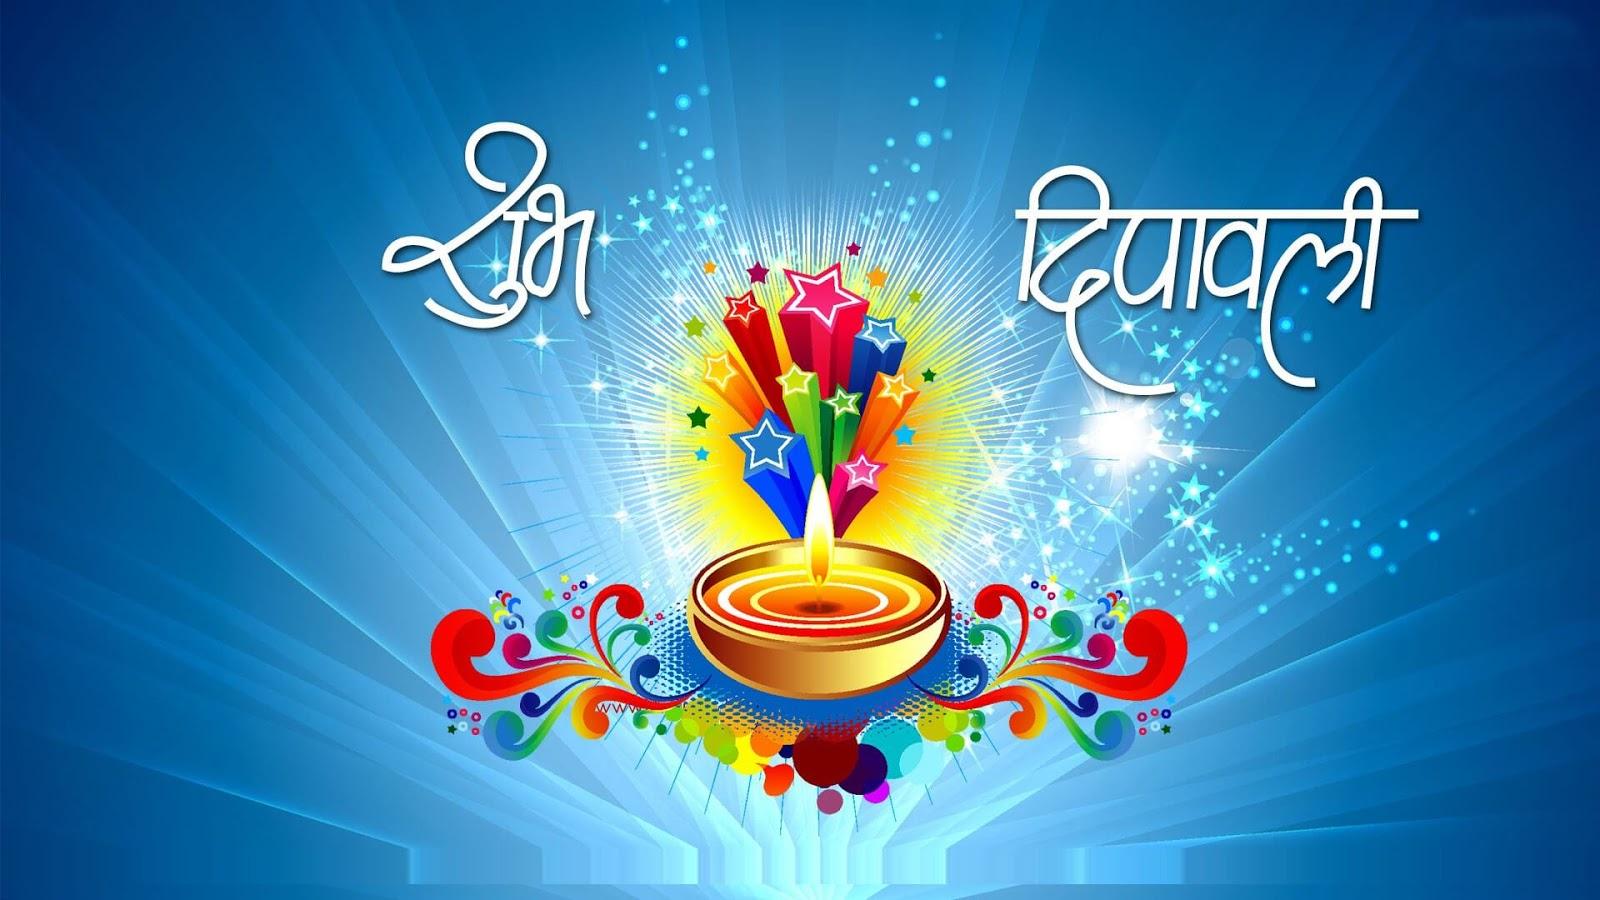 Happy Diwali Wishes 2019 In Hindi: Happy Diwali 2019